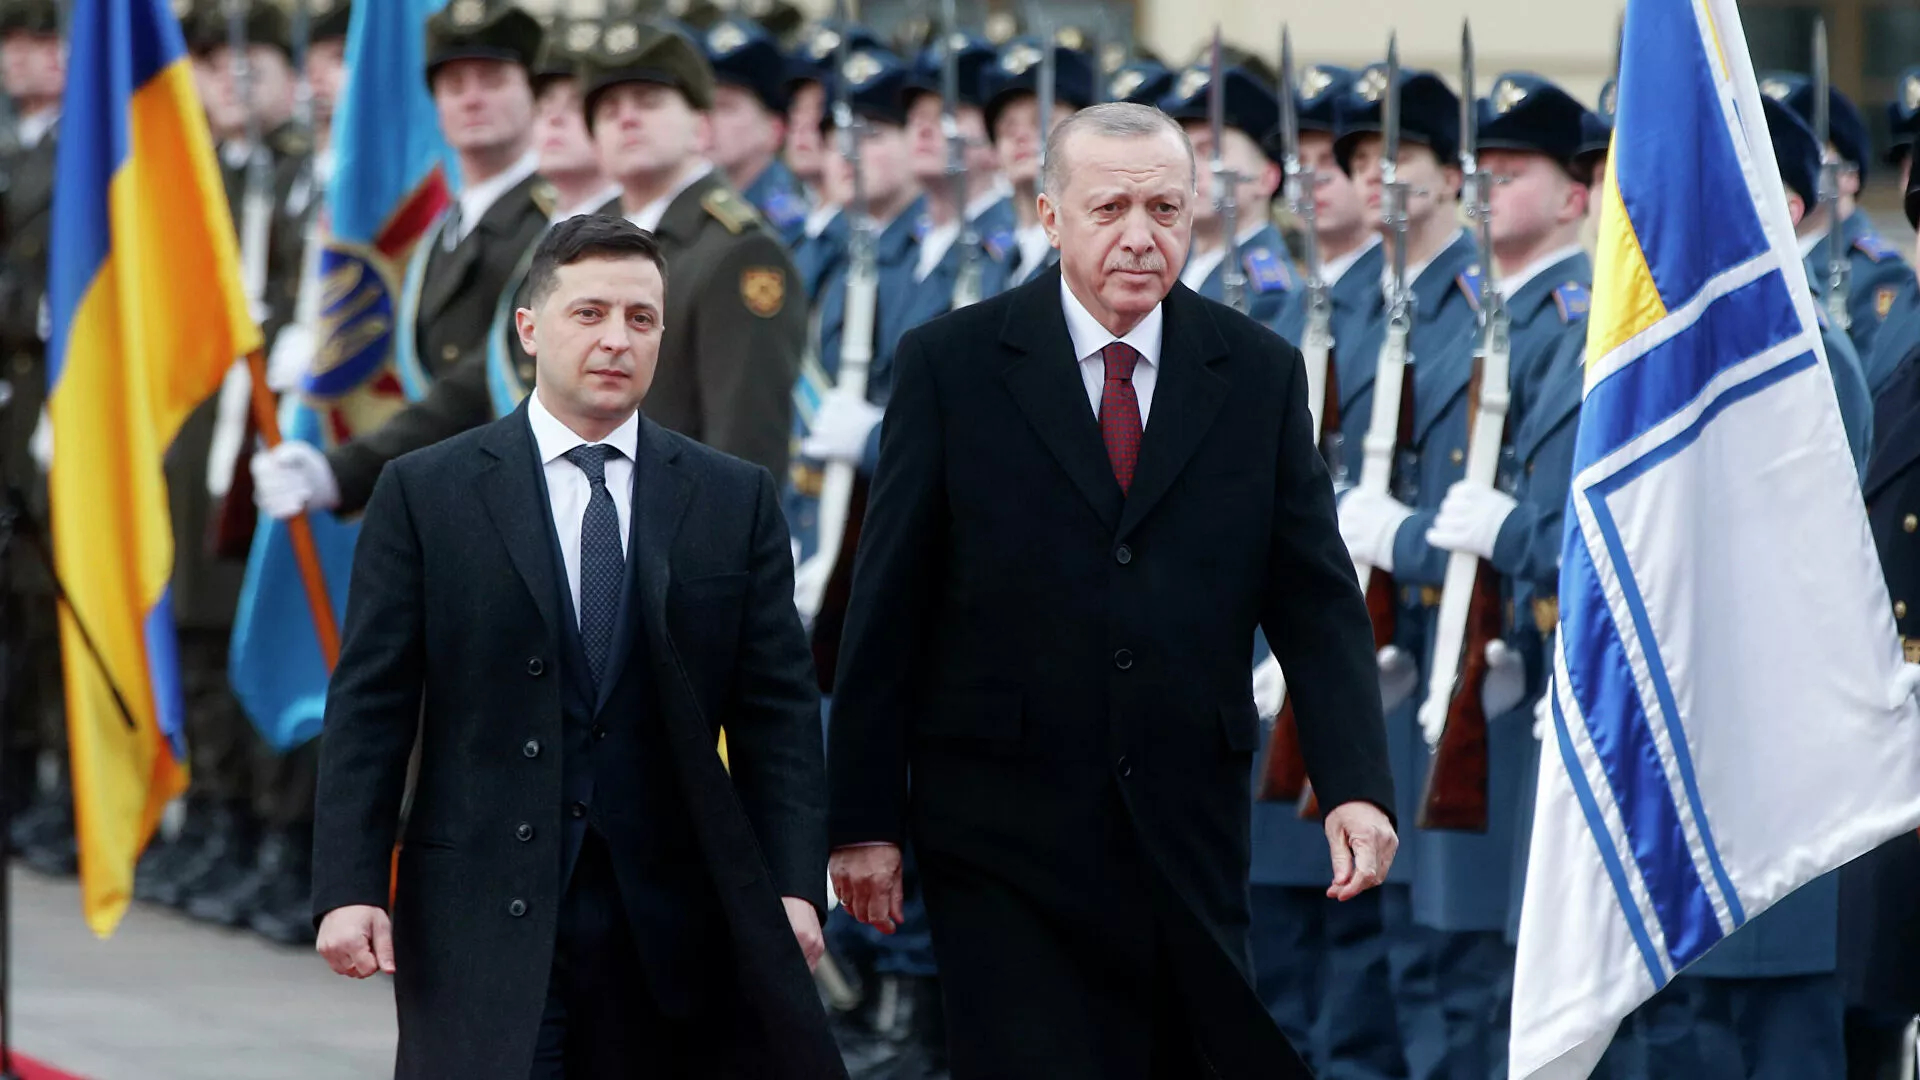 Реджеп Эрдоган во время завтрашнего визита в Киев может обсуждать присоединение Анкары к намечающемуся...